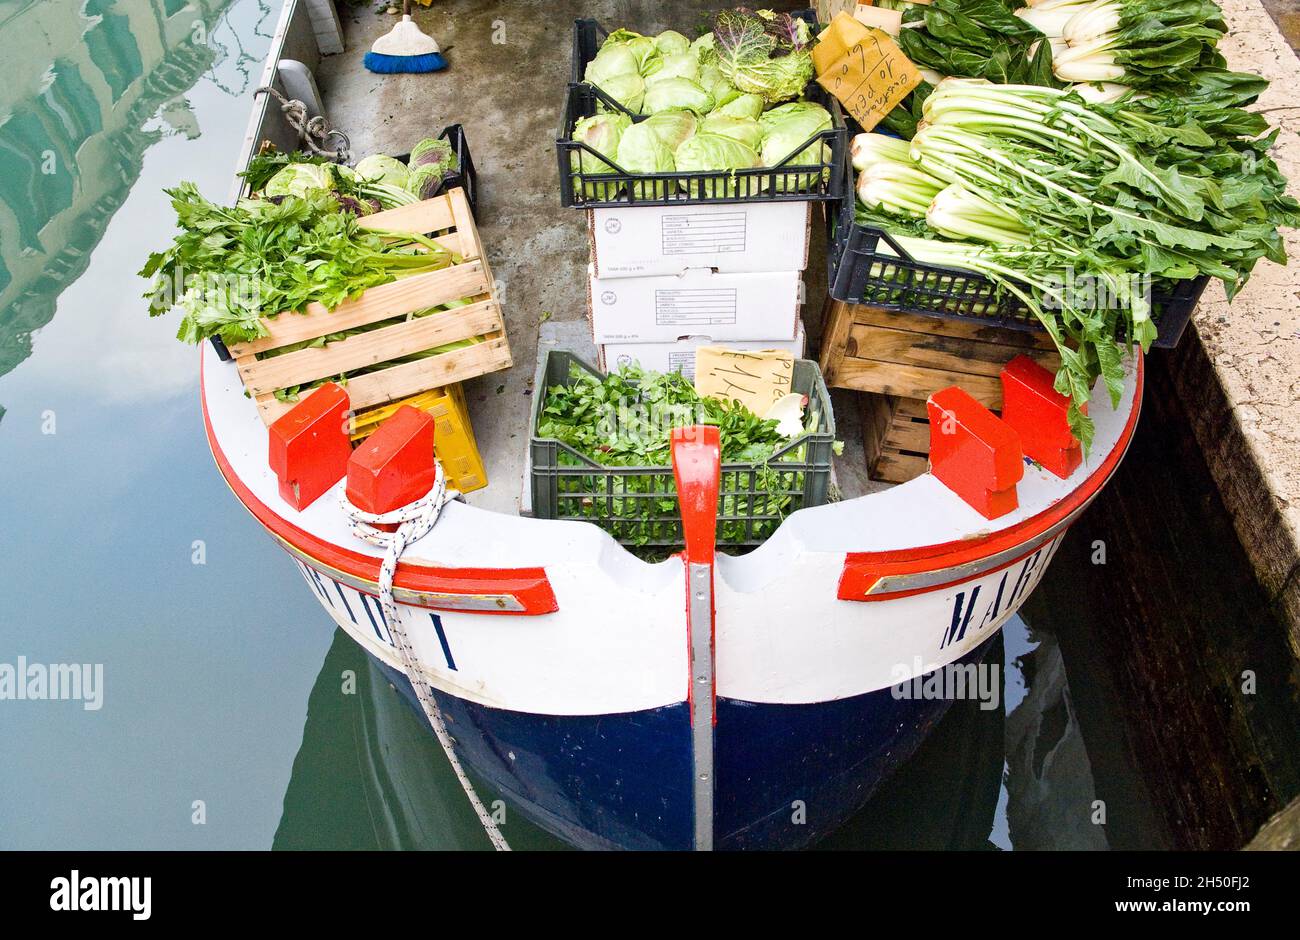 Obst und Gemüse zum Verkauf auf einem venezianischen Boot, venedig, italien Stockfoto